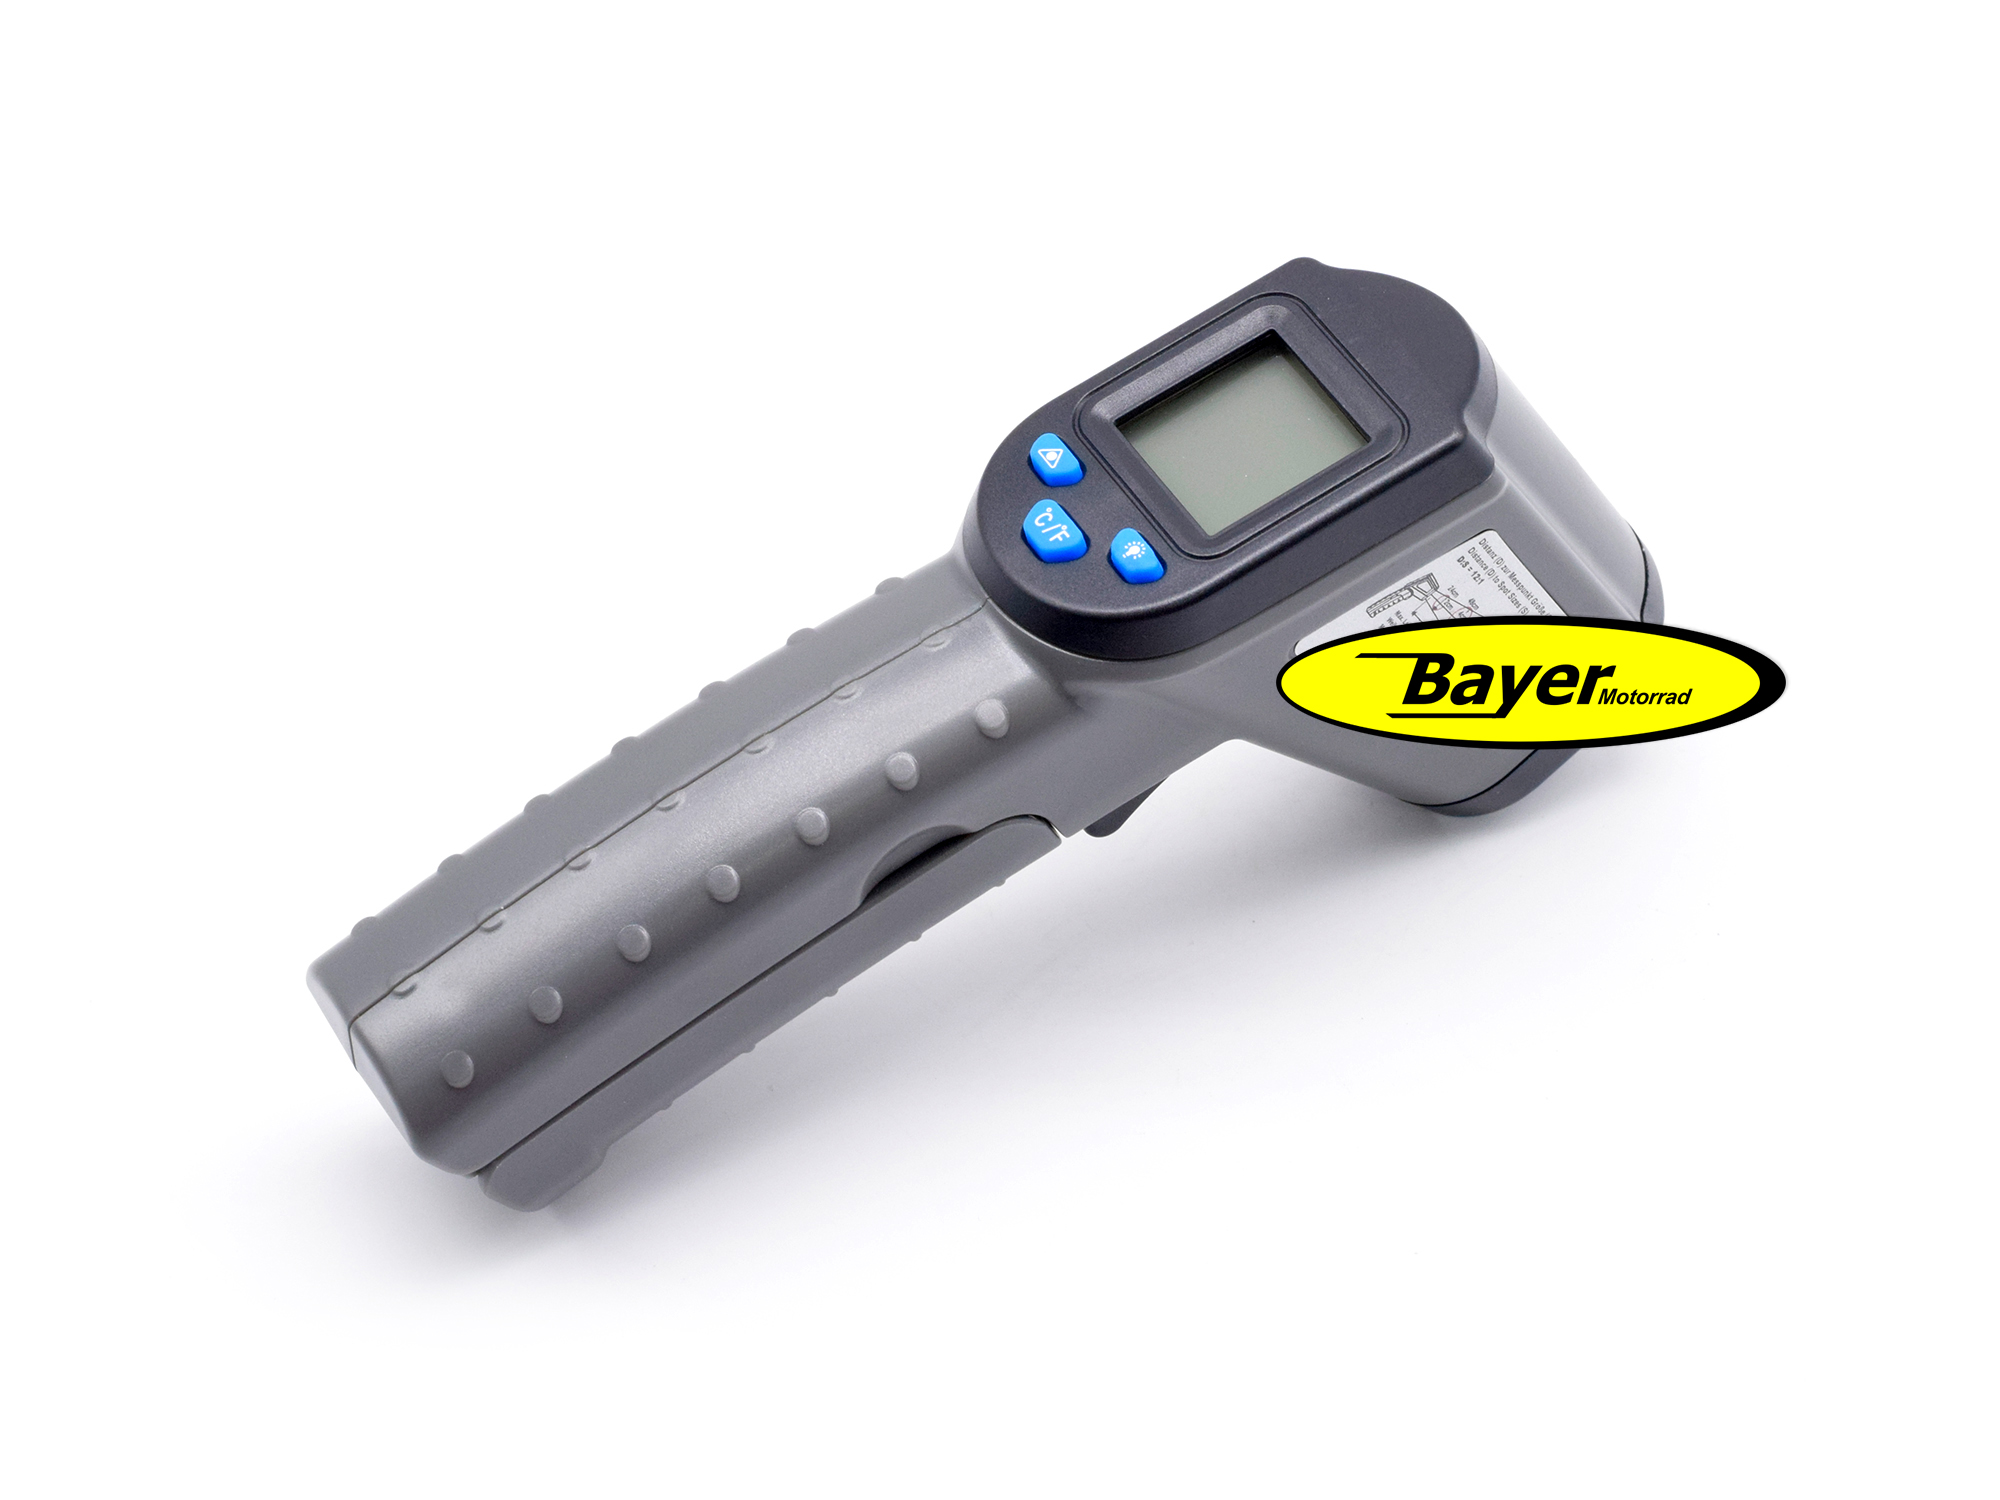 Termometro laser digitale, BMW e Universal